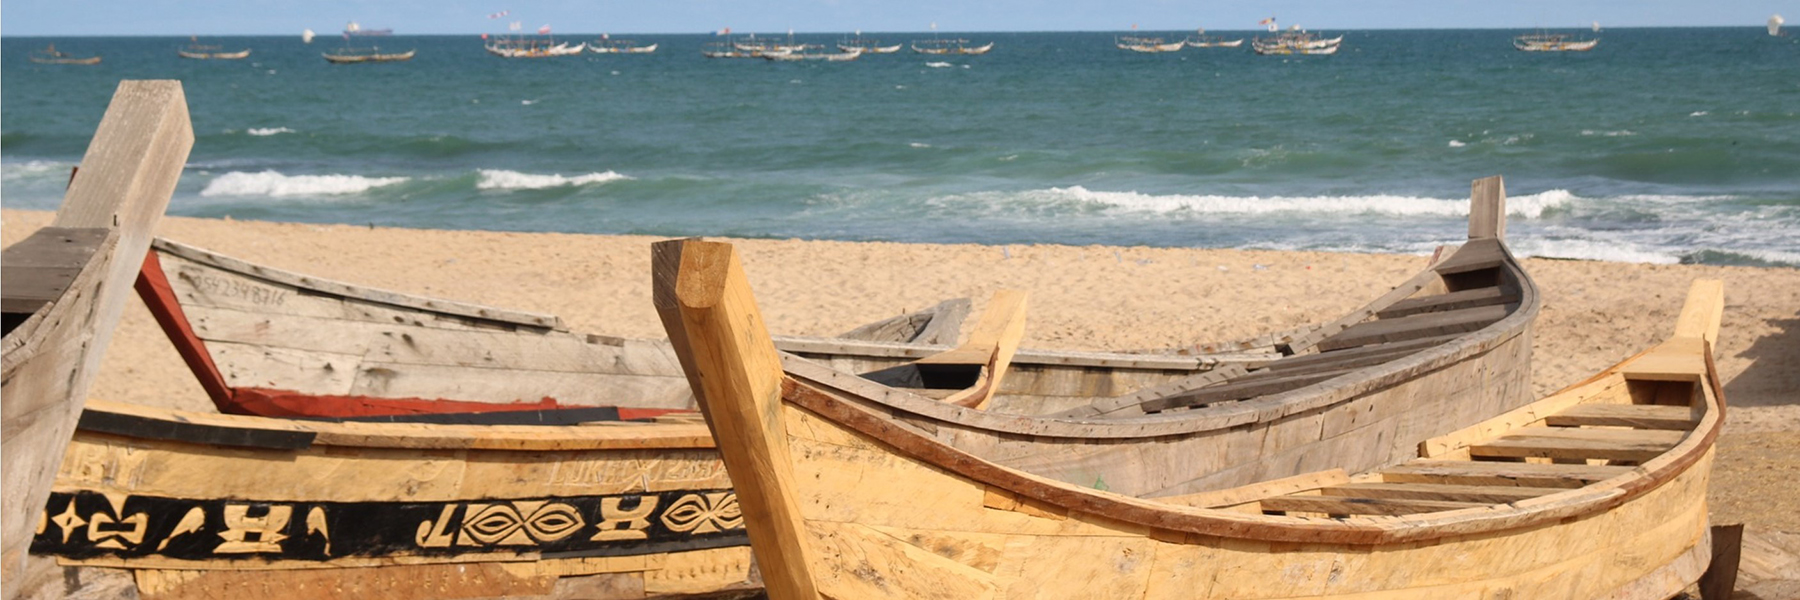 Wooden boats on a beach along the coast of Ghana